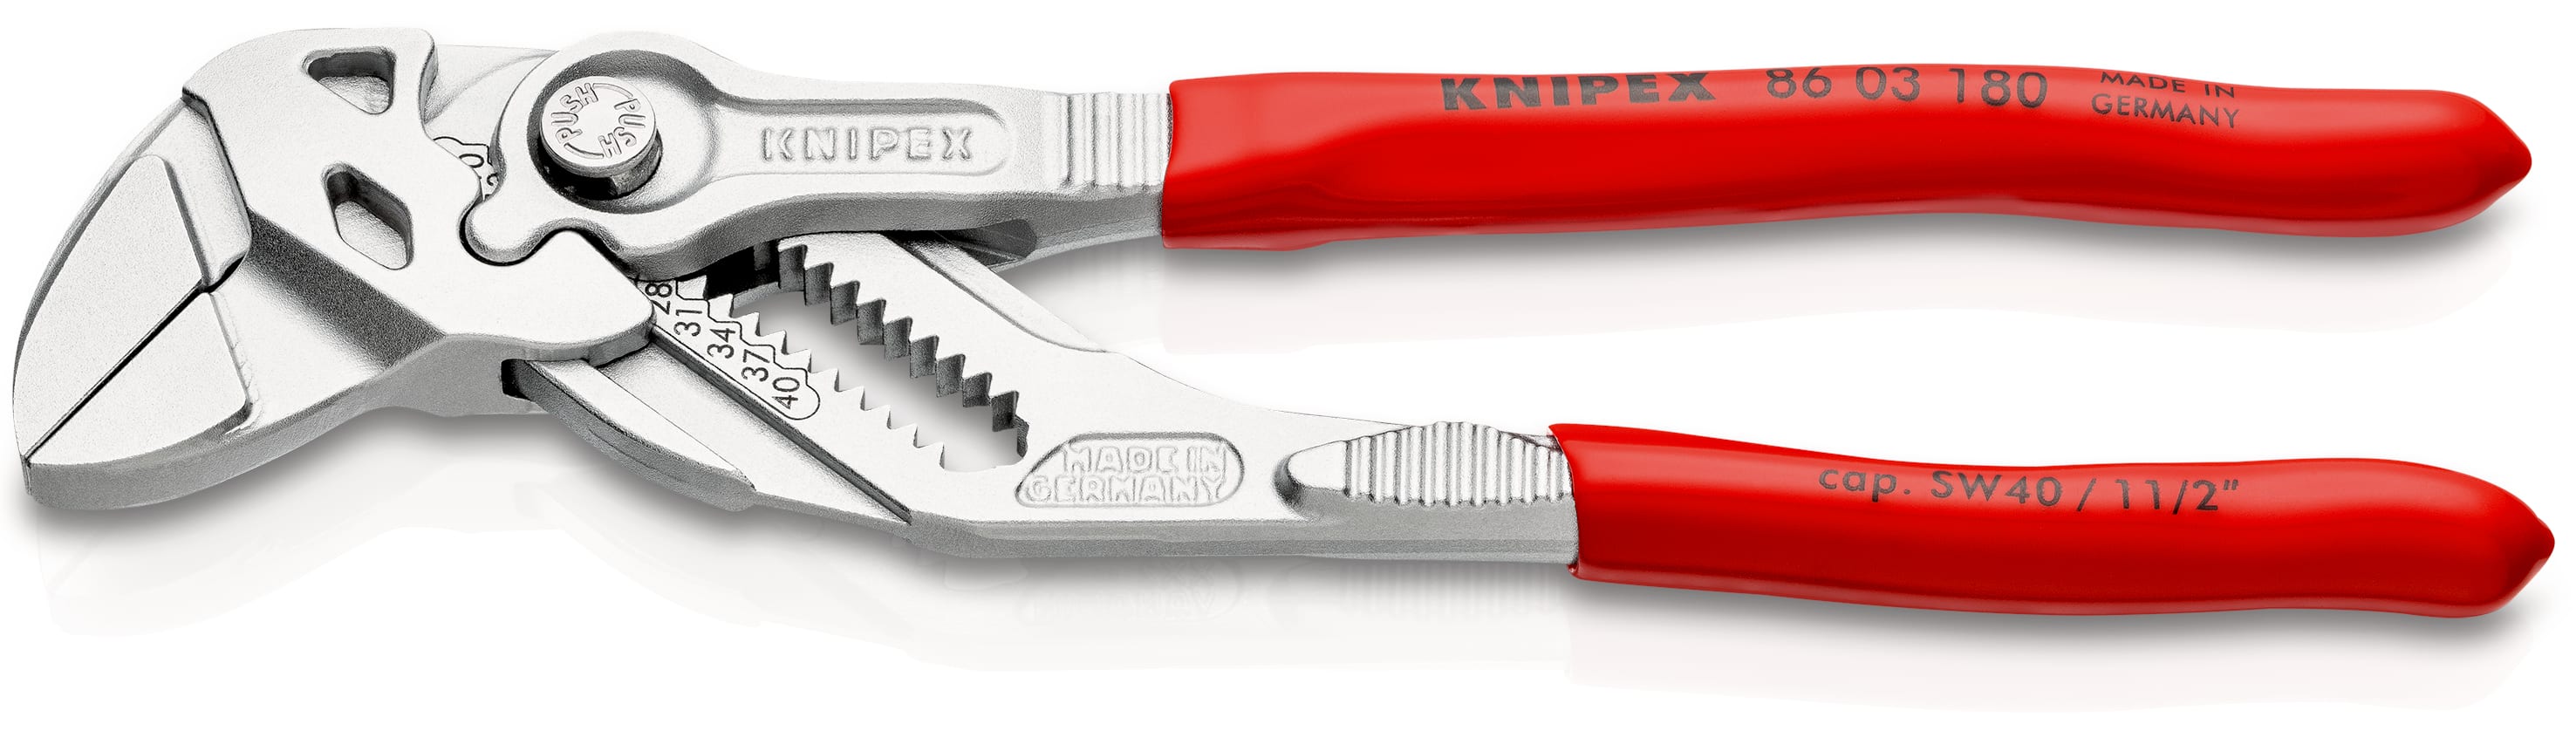 KNIPEX Herramientas - Alicates electrónicos, puntas planas (3511115), rojo